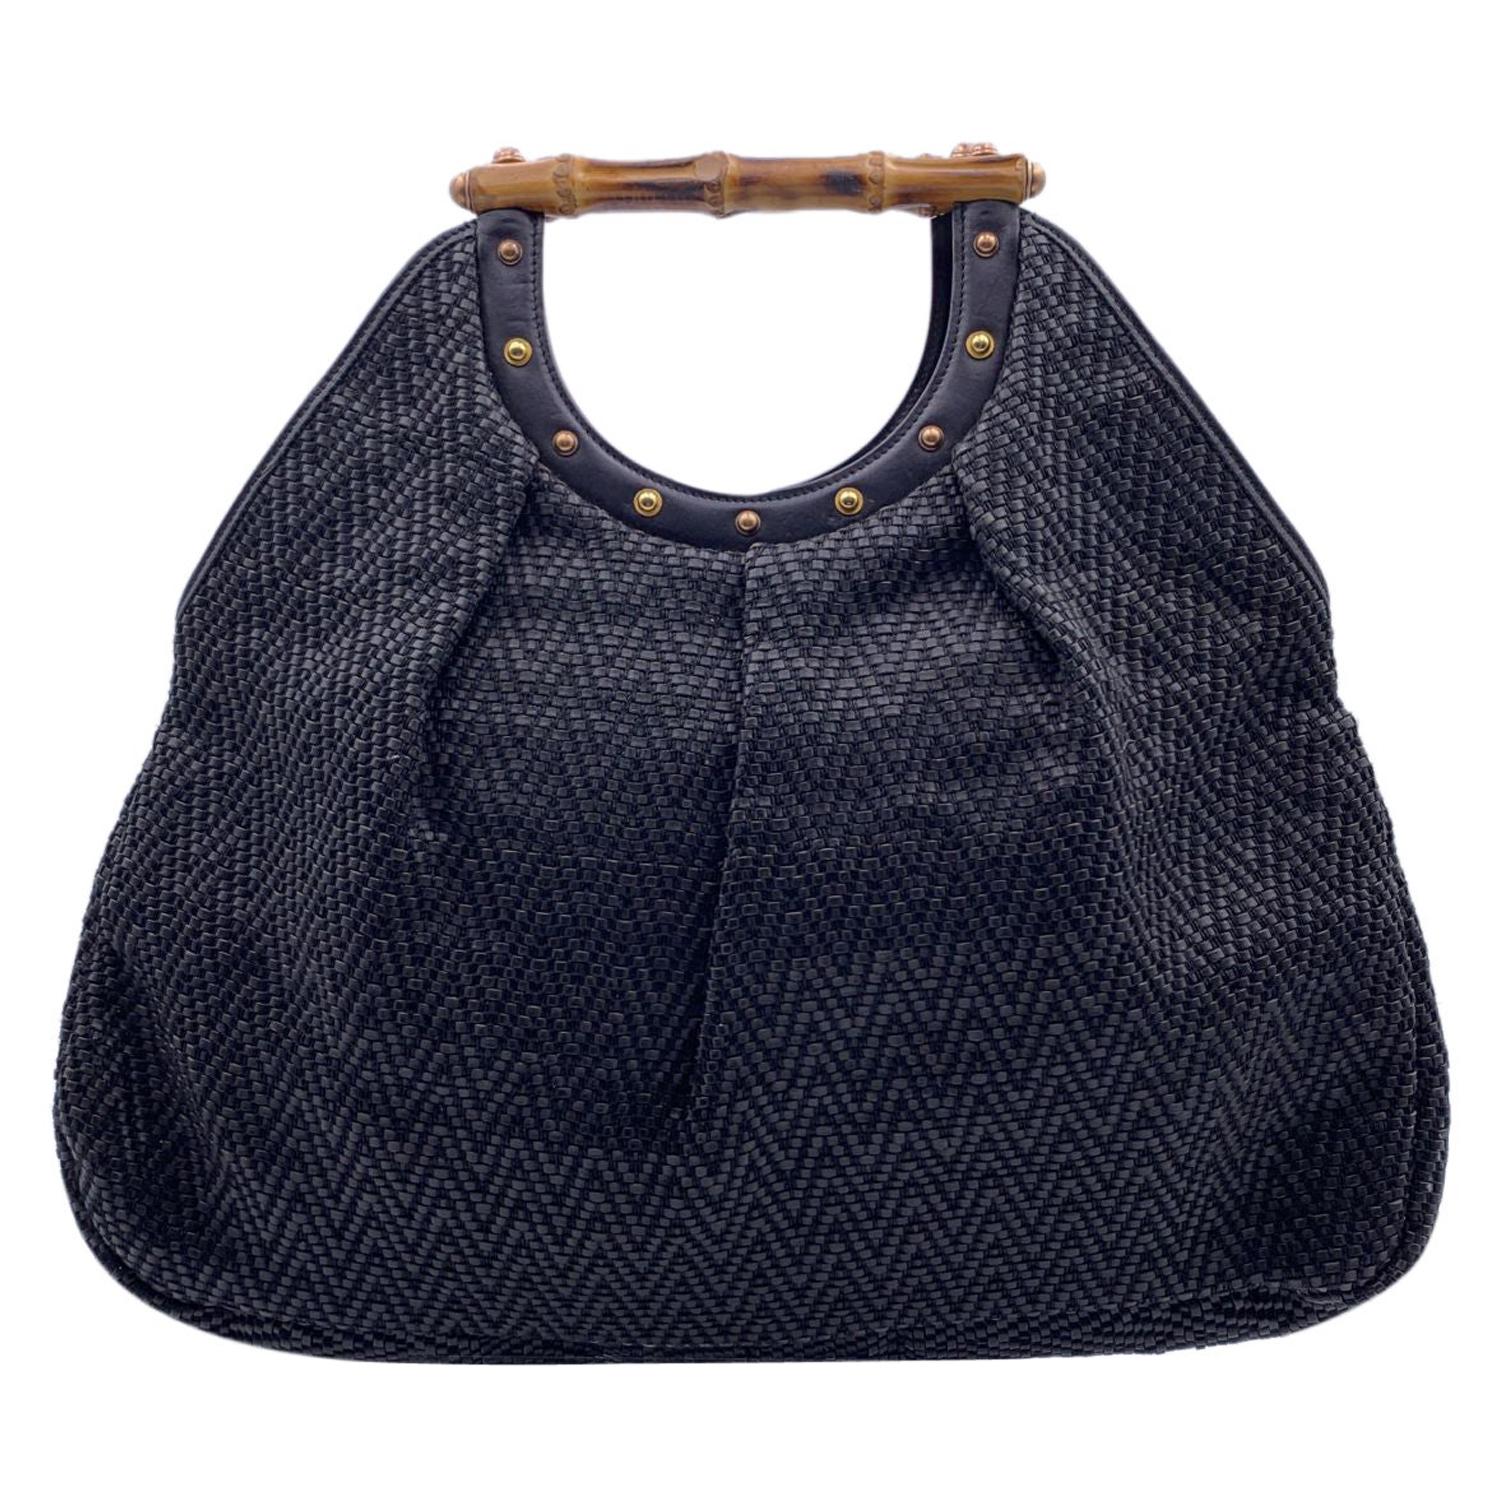 Gucci Black Woven Leather Bamboo Studded Tote Bag Handbag